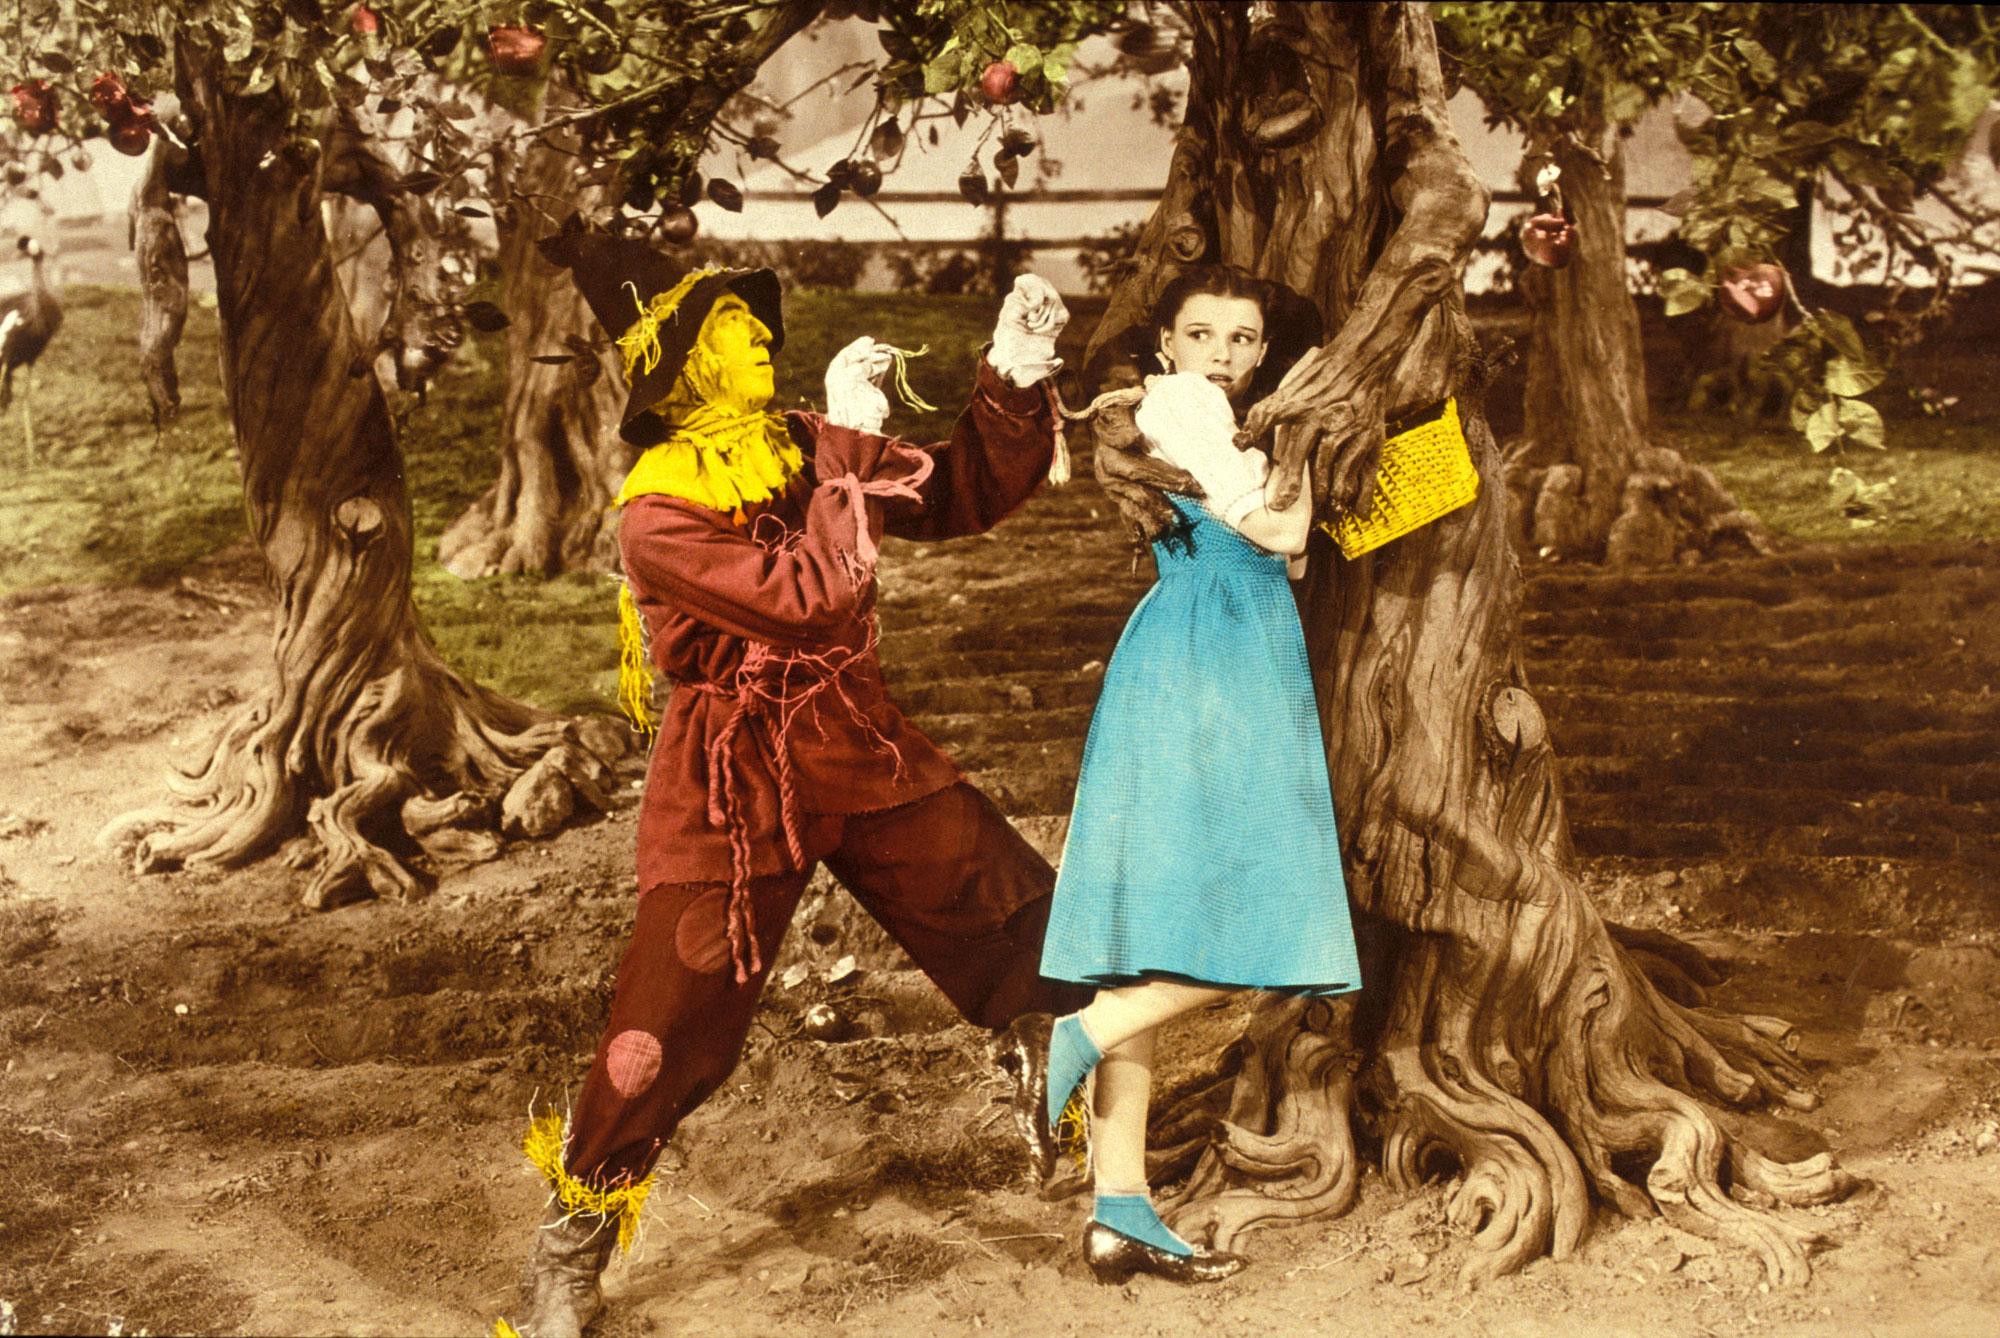 Une scène du film "Le magicien d'Oz".